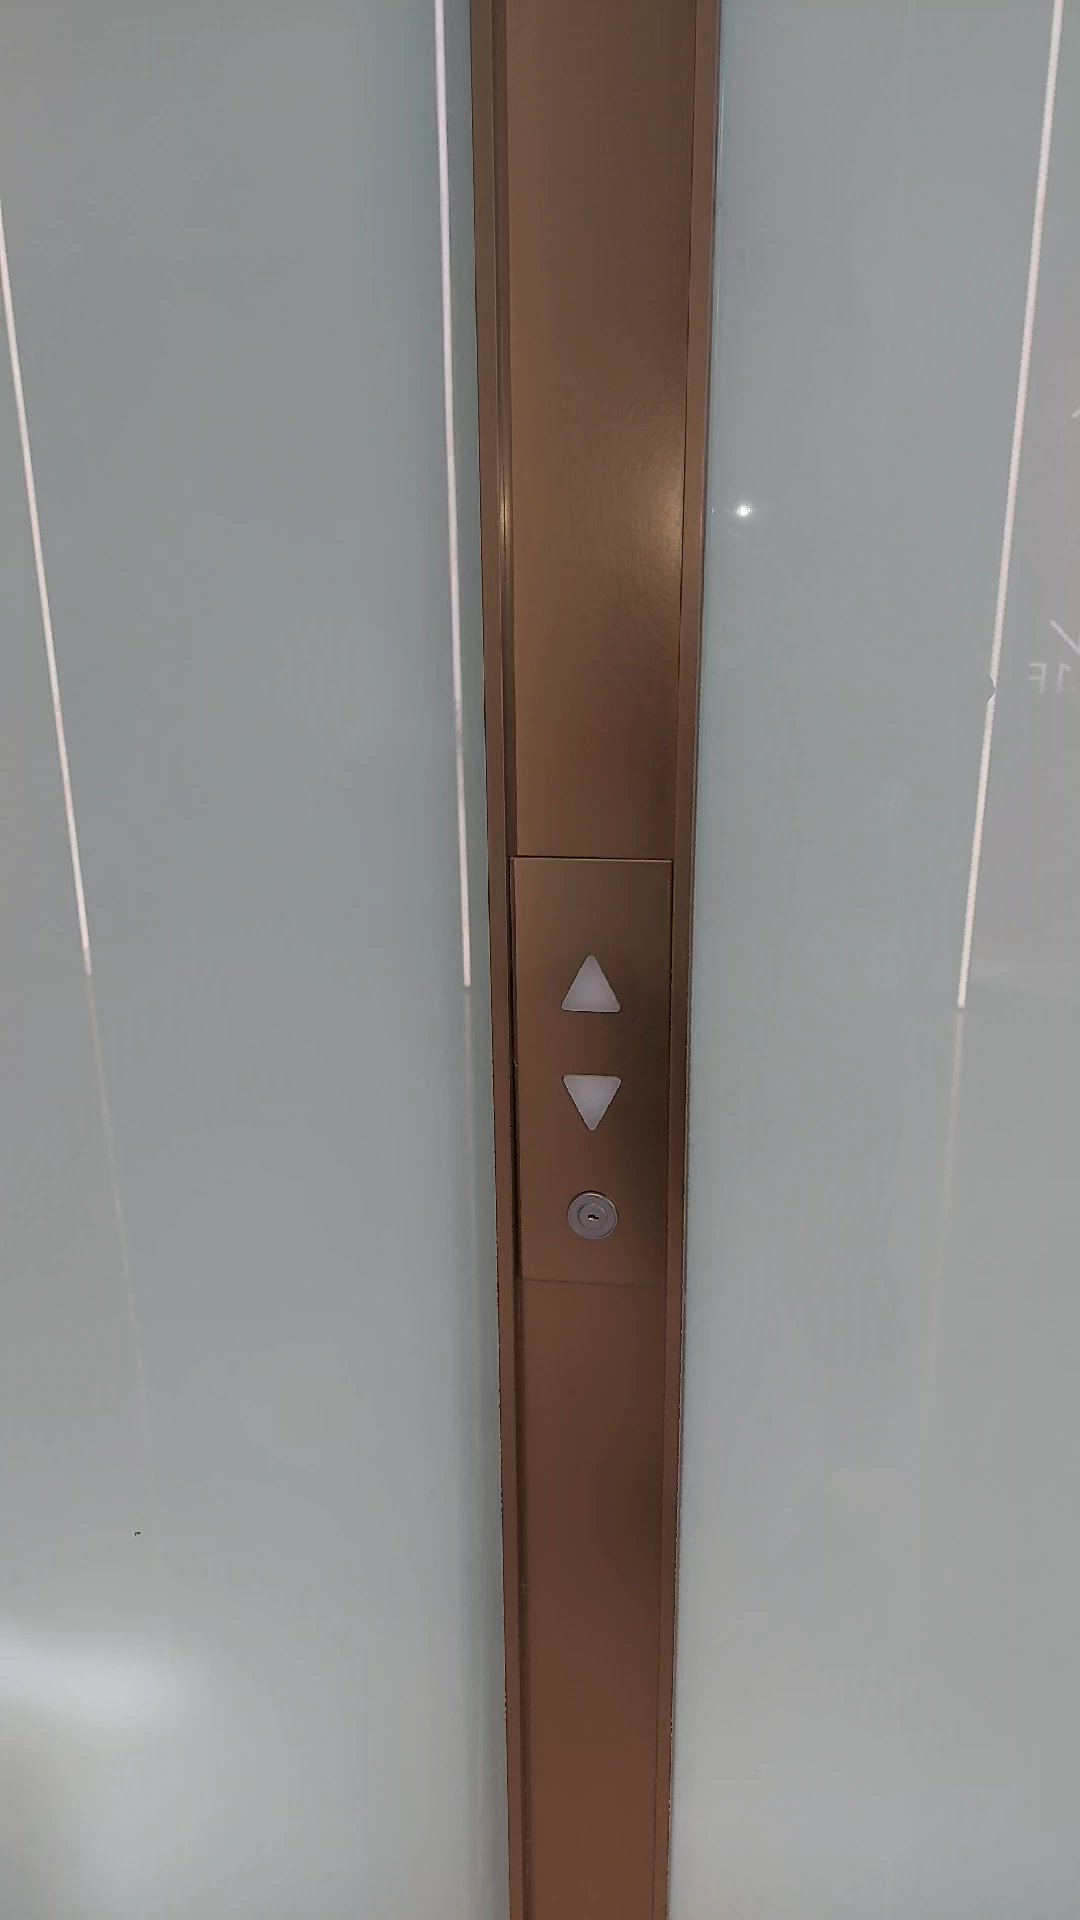 厦门集美软件园金融中心B15栋三菱maxiez-CZ电梯一楼外呼翻新改造的周围的环境